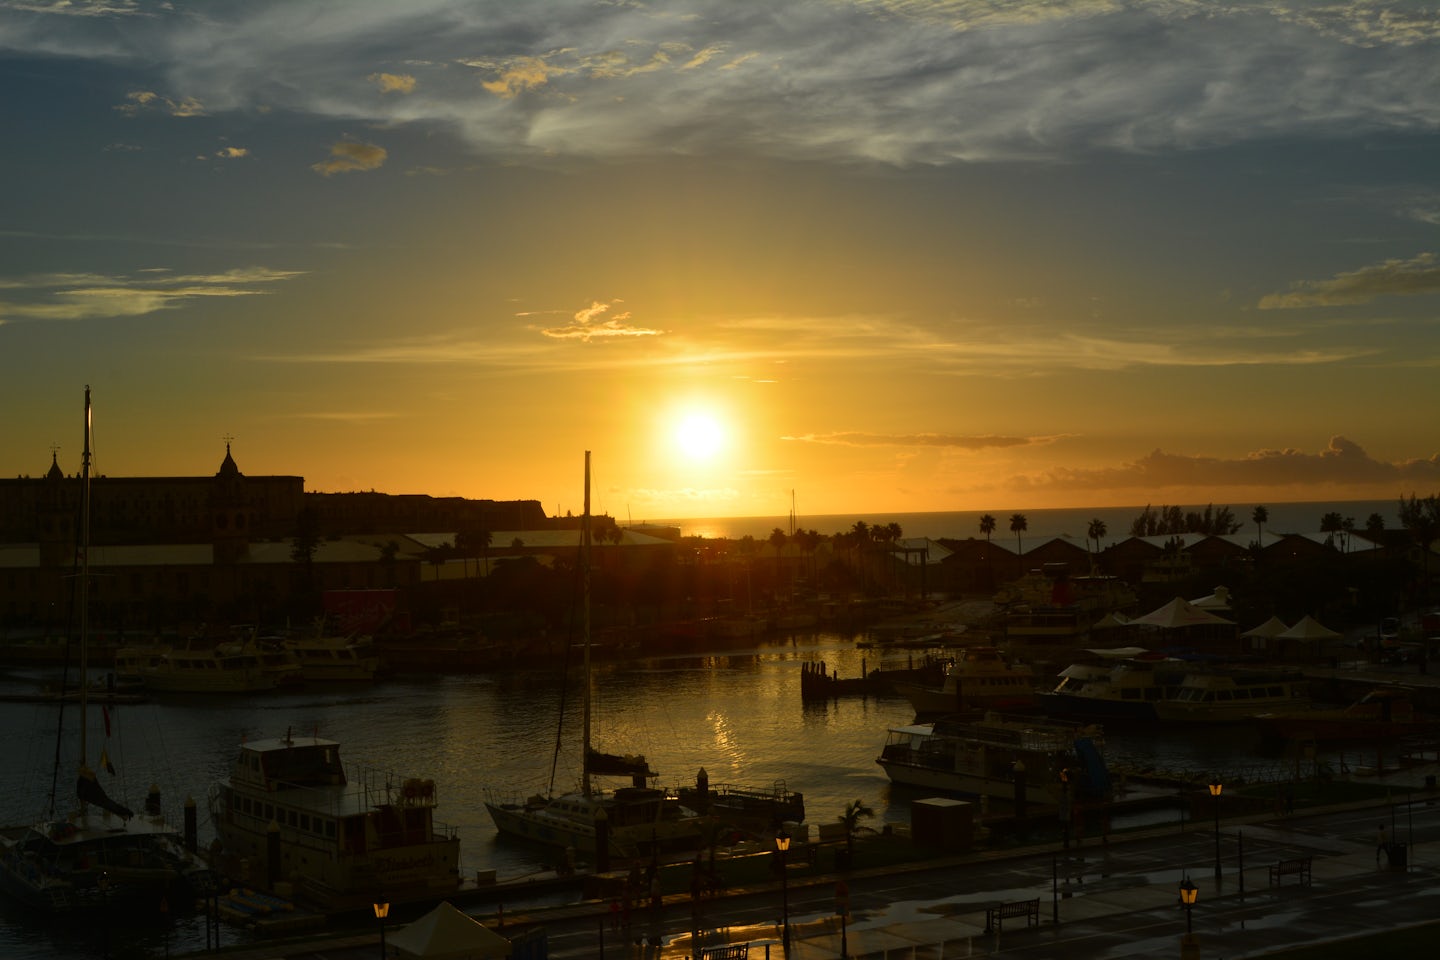 Sunset at Royal Navy Dockyard